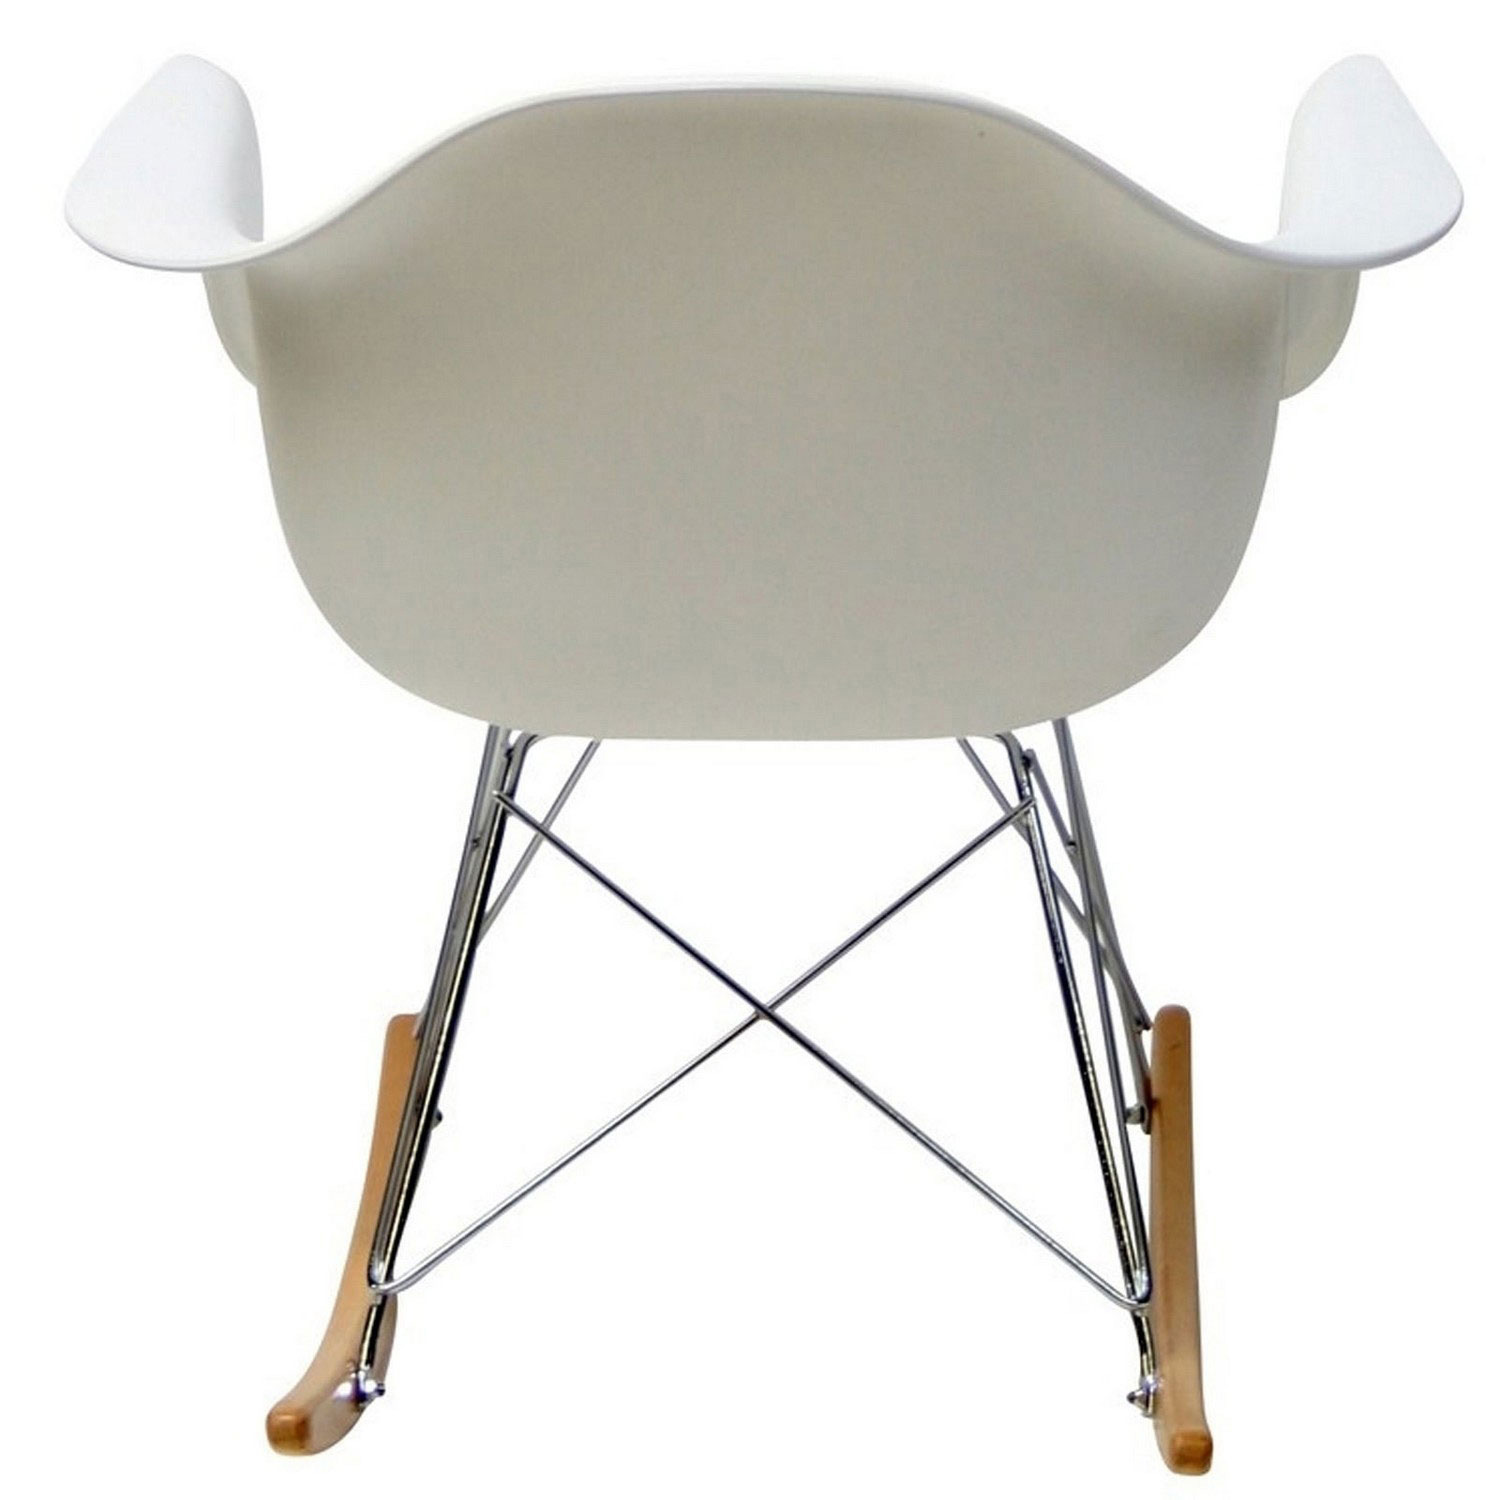 Modway Rocker Lounge Chair - White